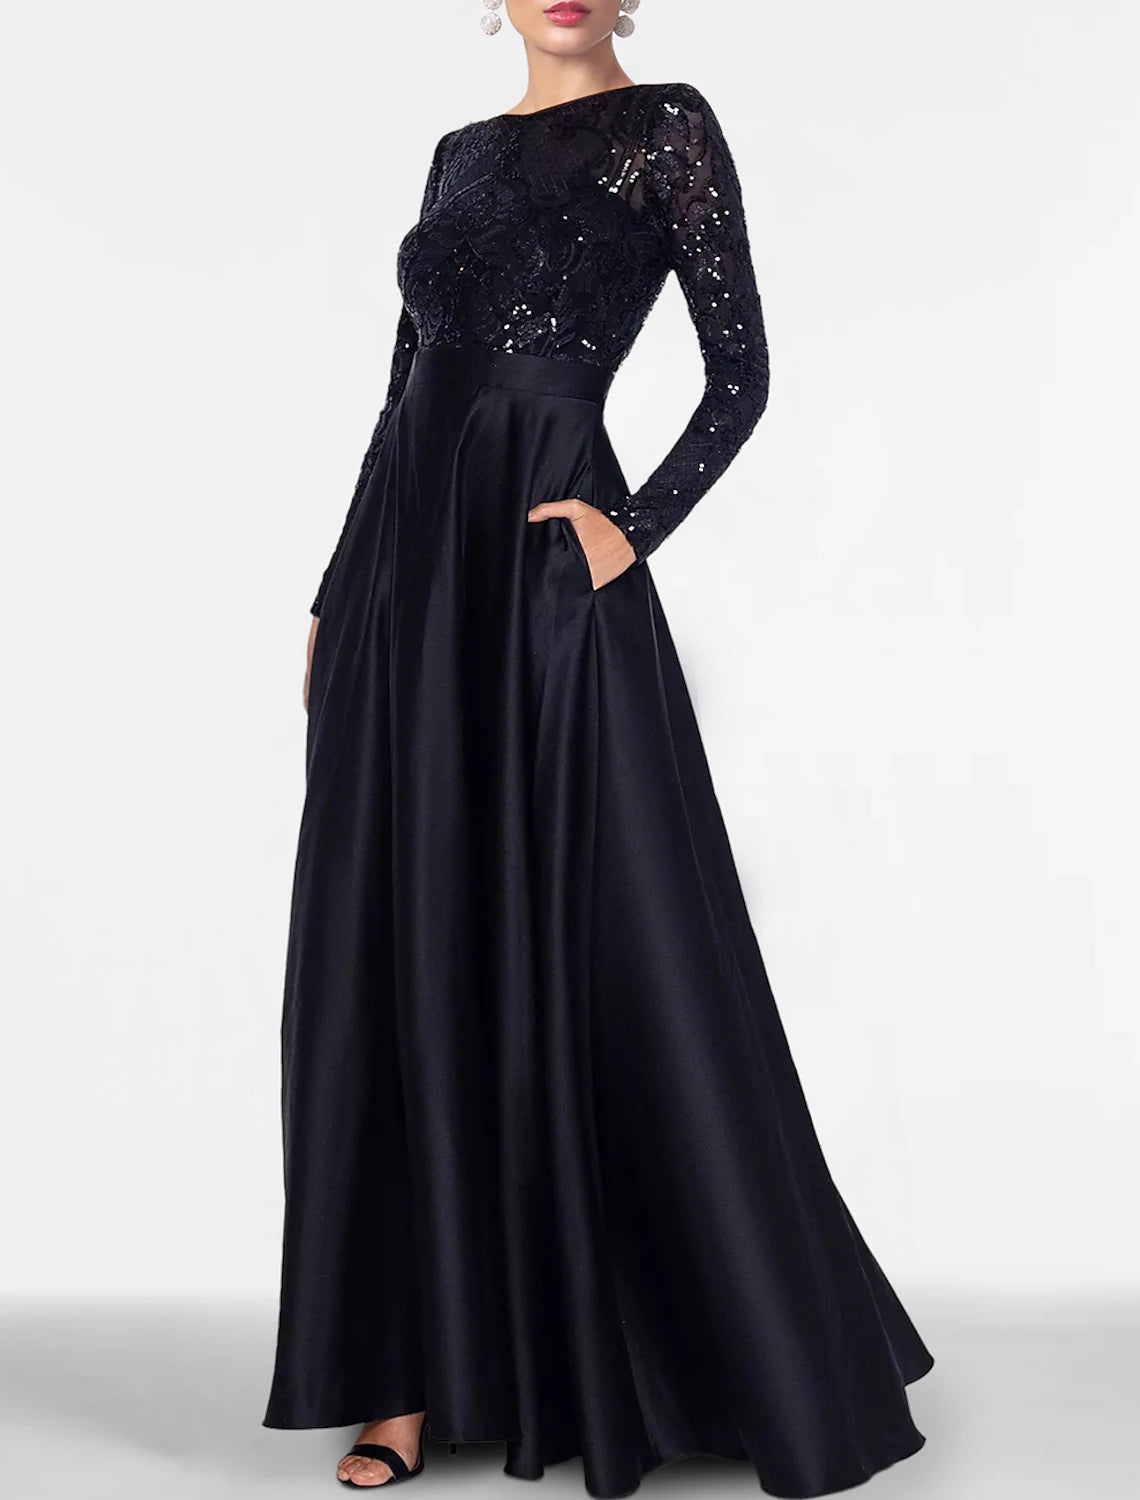 A-Line Evening Gown Elegant Dress Formal Black Tie Floor Length Long Sleeve Off Shoulder Fall Wedding Guest Satin with Slit Pocket